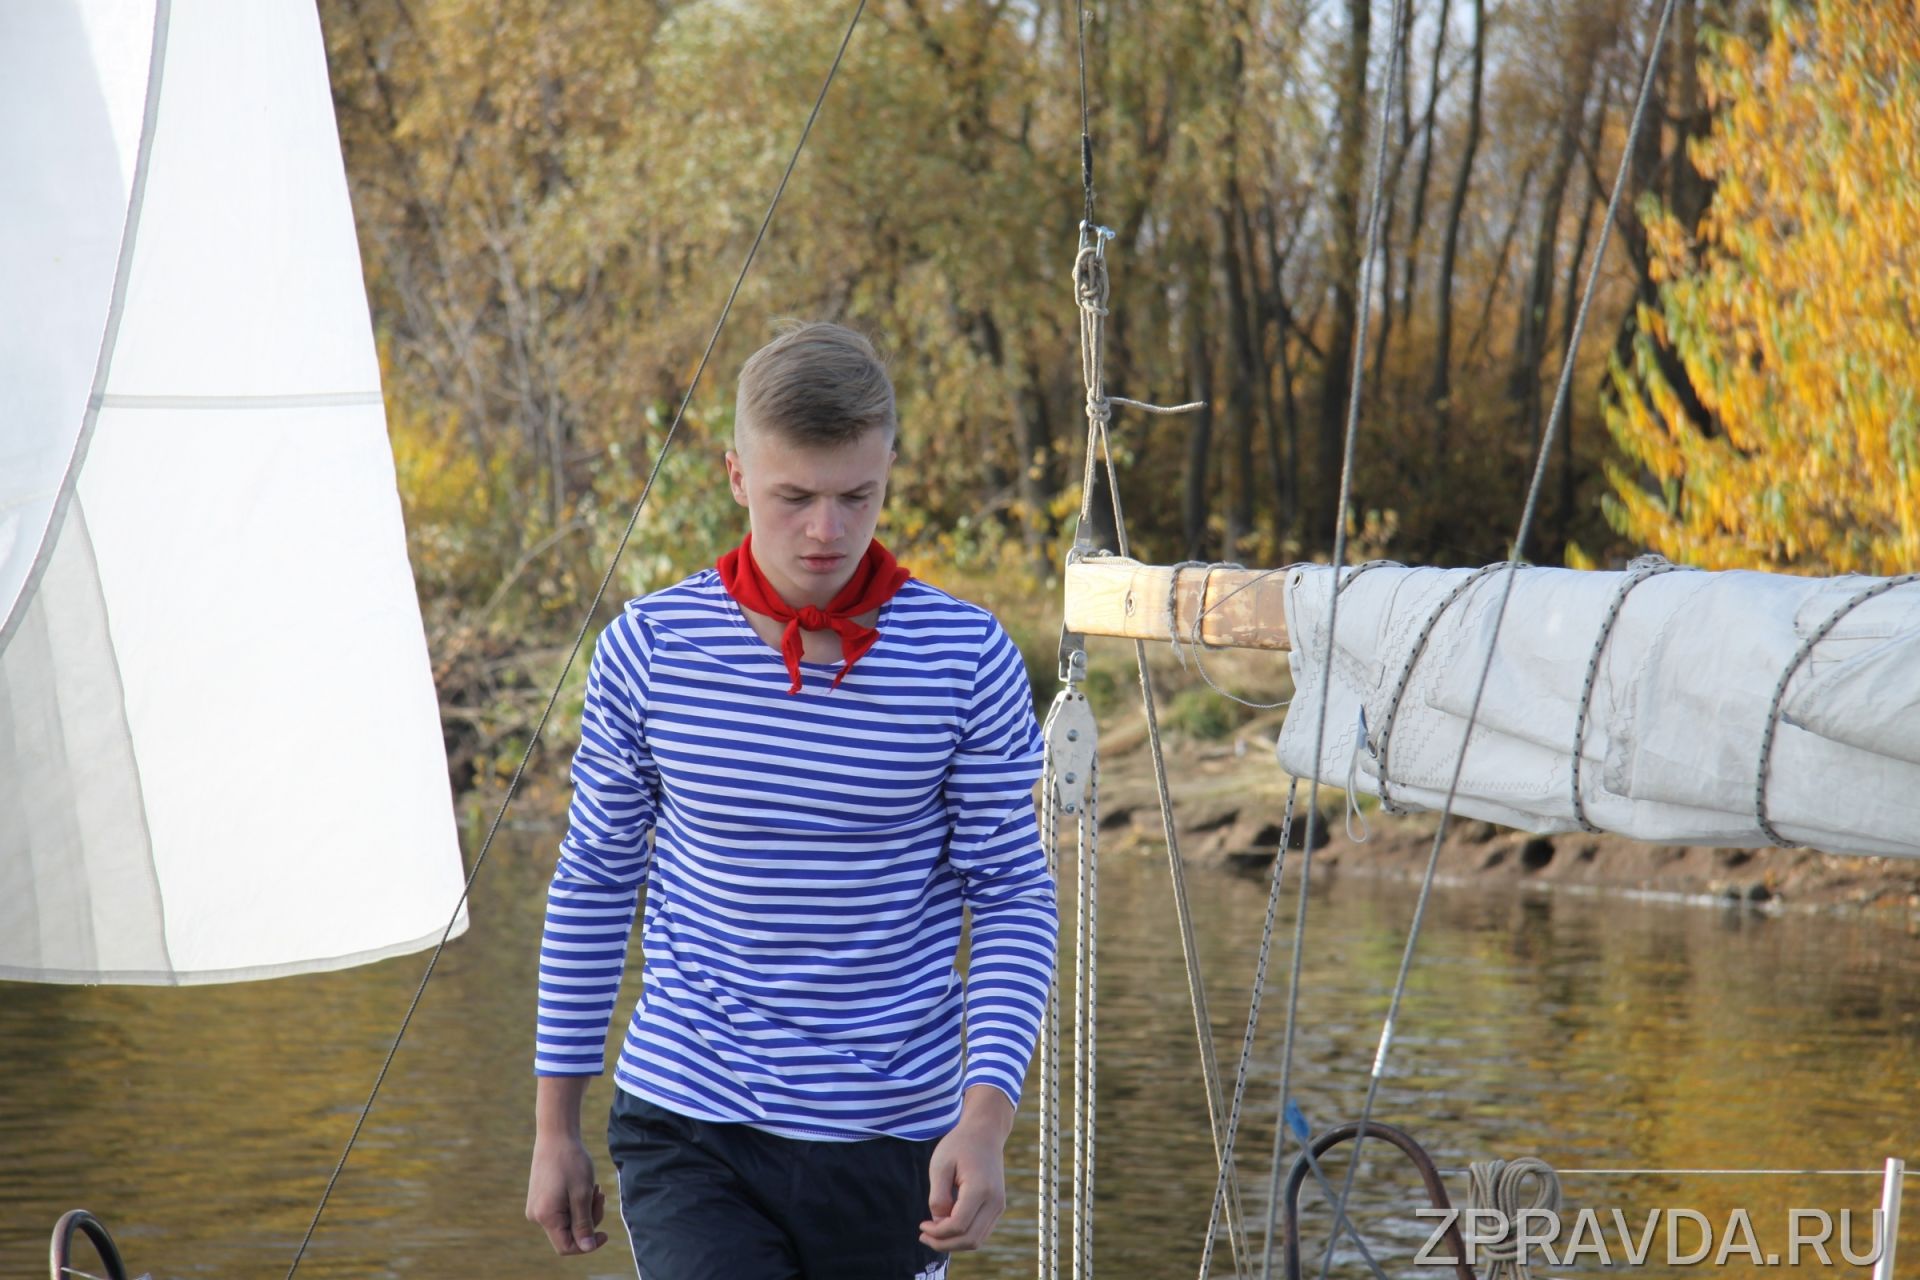 Лучшие юные водники живут в Зеленодольске